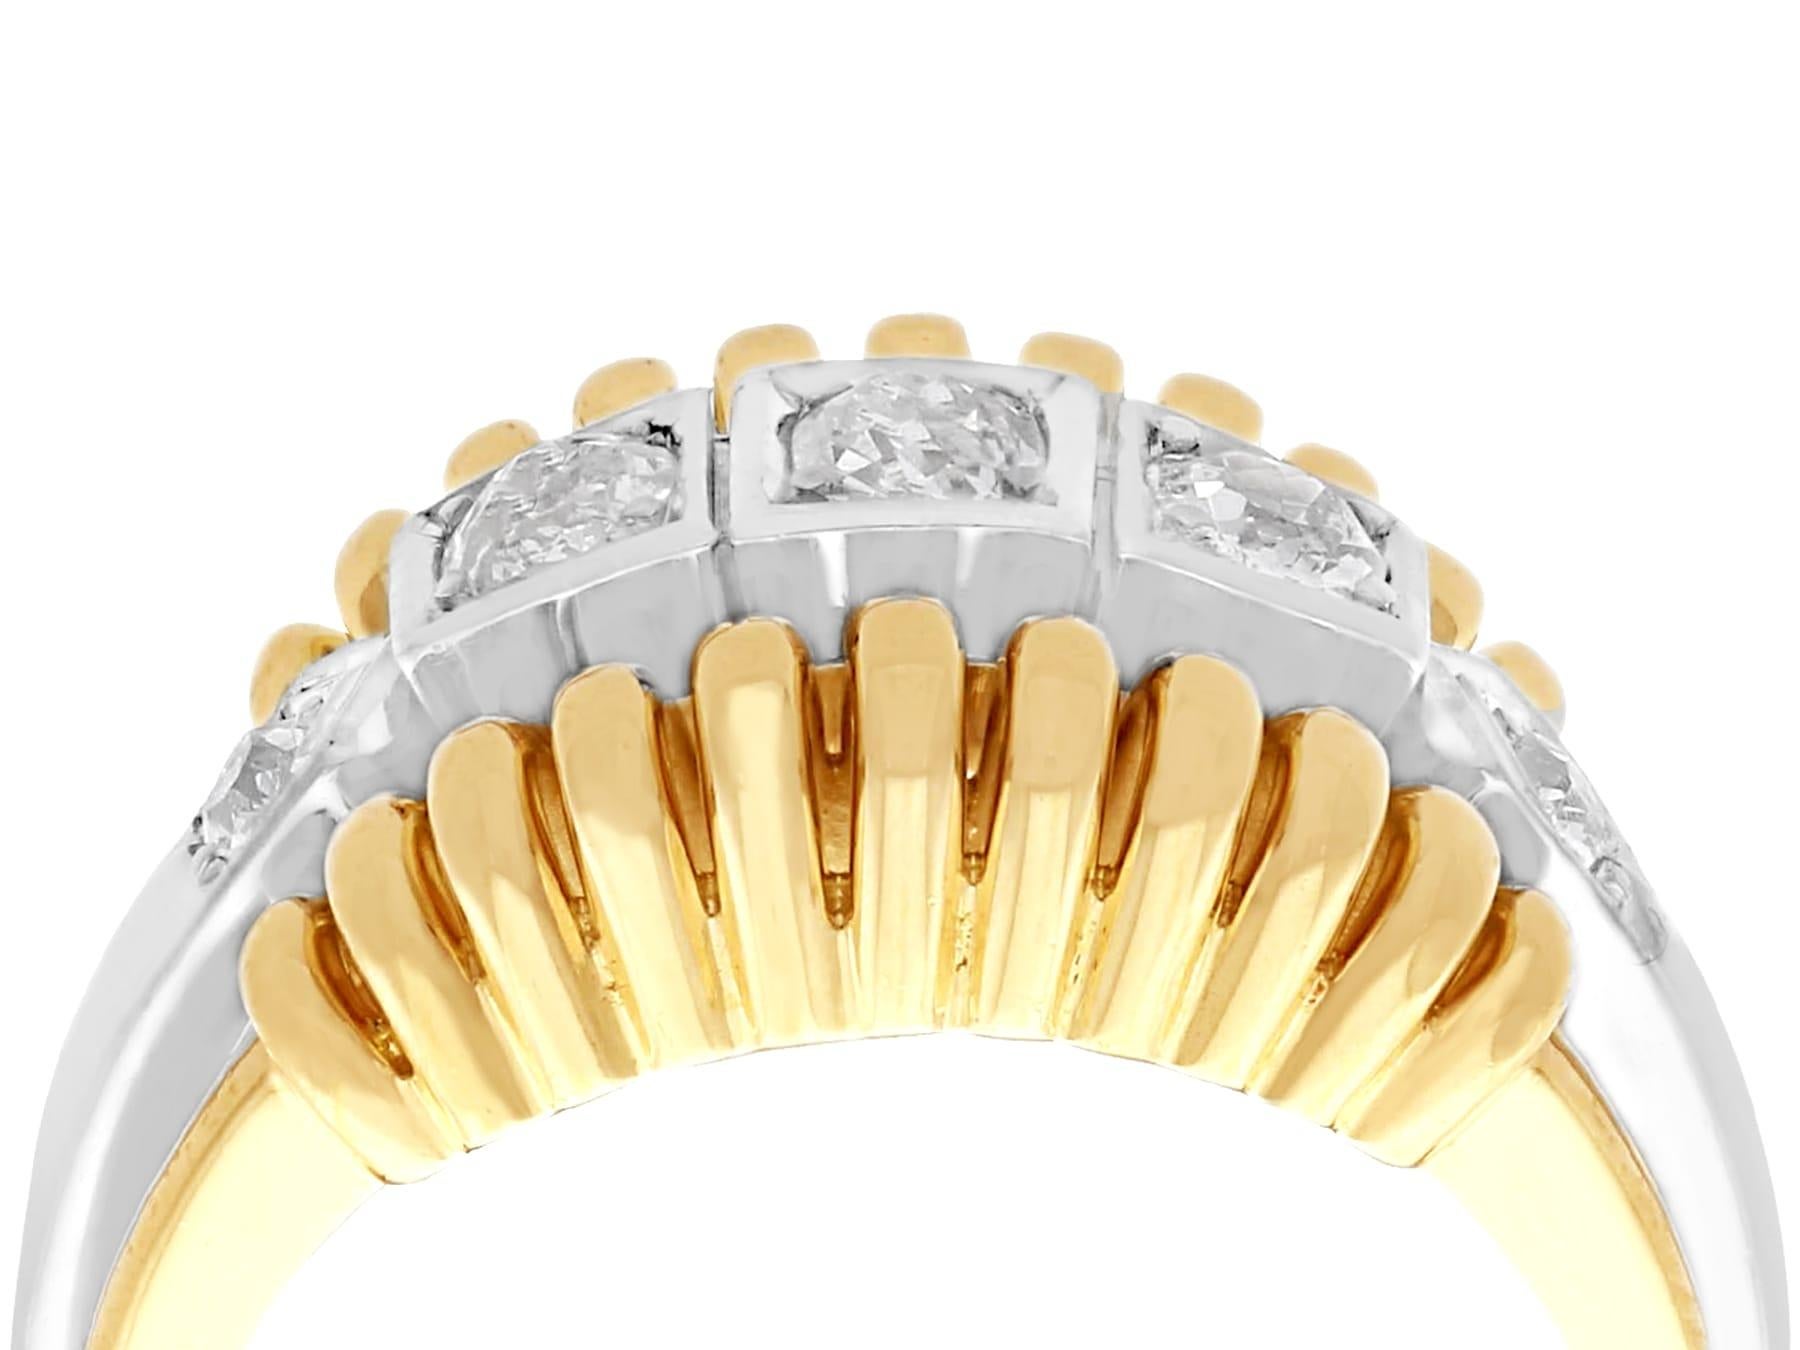 Une bague impressionnante de style Art Déco avec un diamant de 0,88 carat et une monture en or jaune et en or blanc 14k ; une partie de nos diverses collections de bijoux en diamant.

Cette belle et impressionnante bague à diamants vintage a été